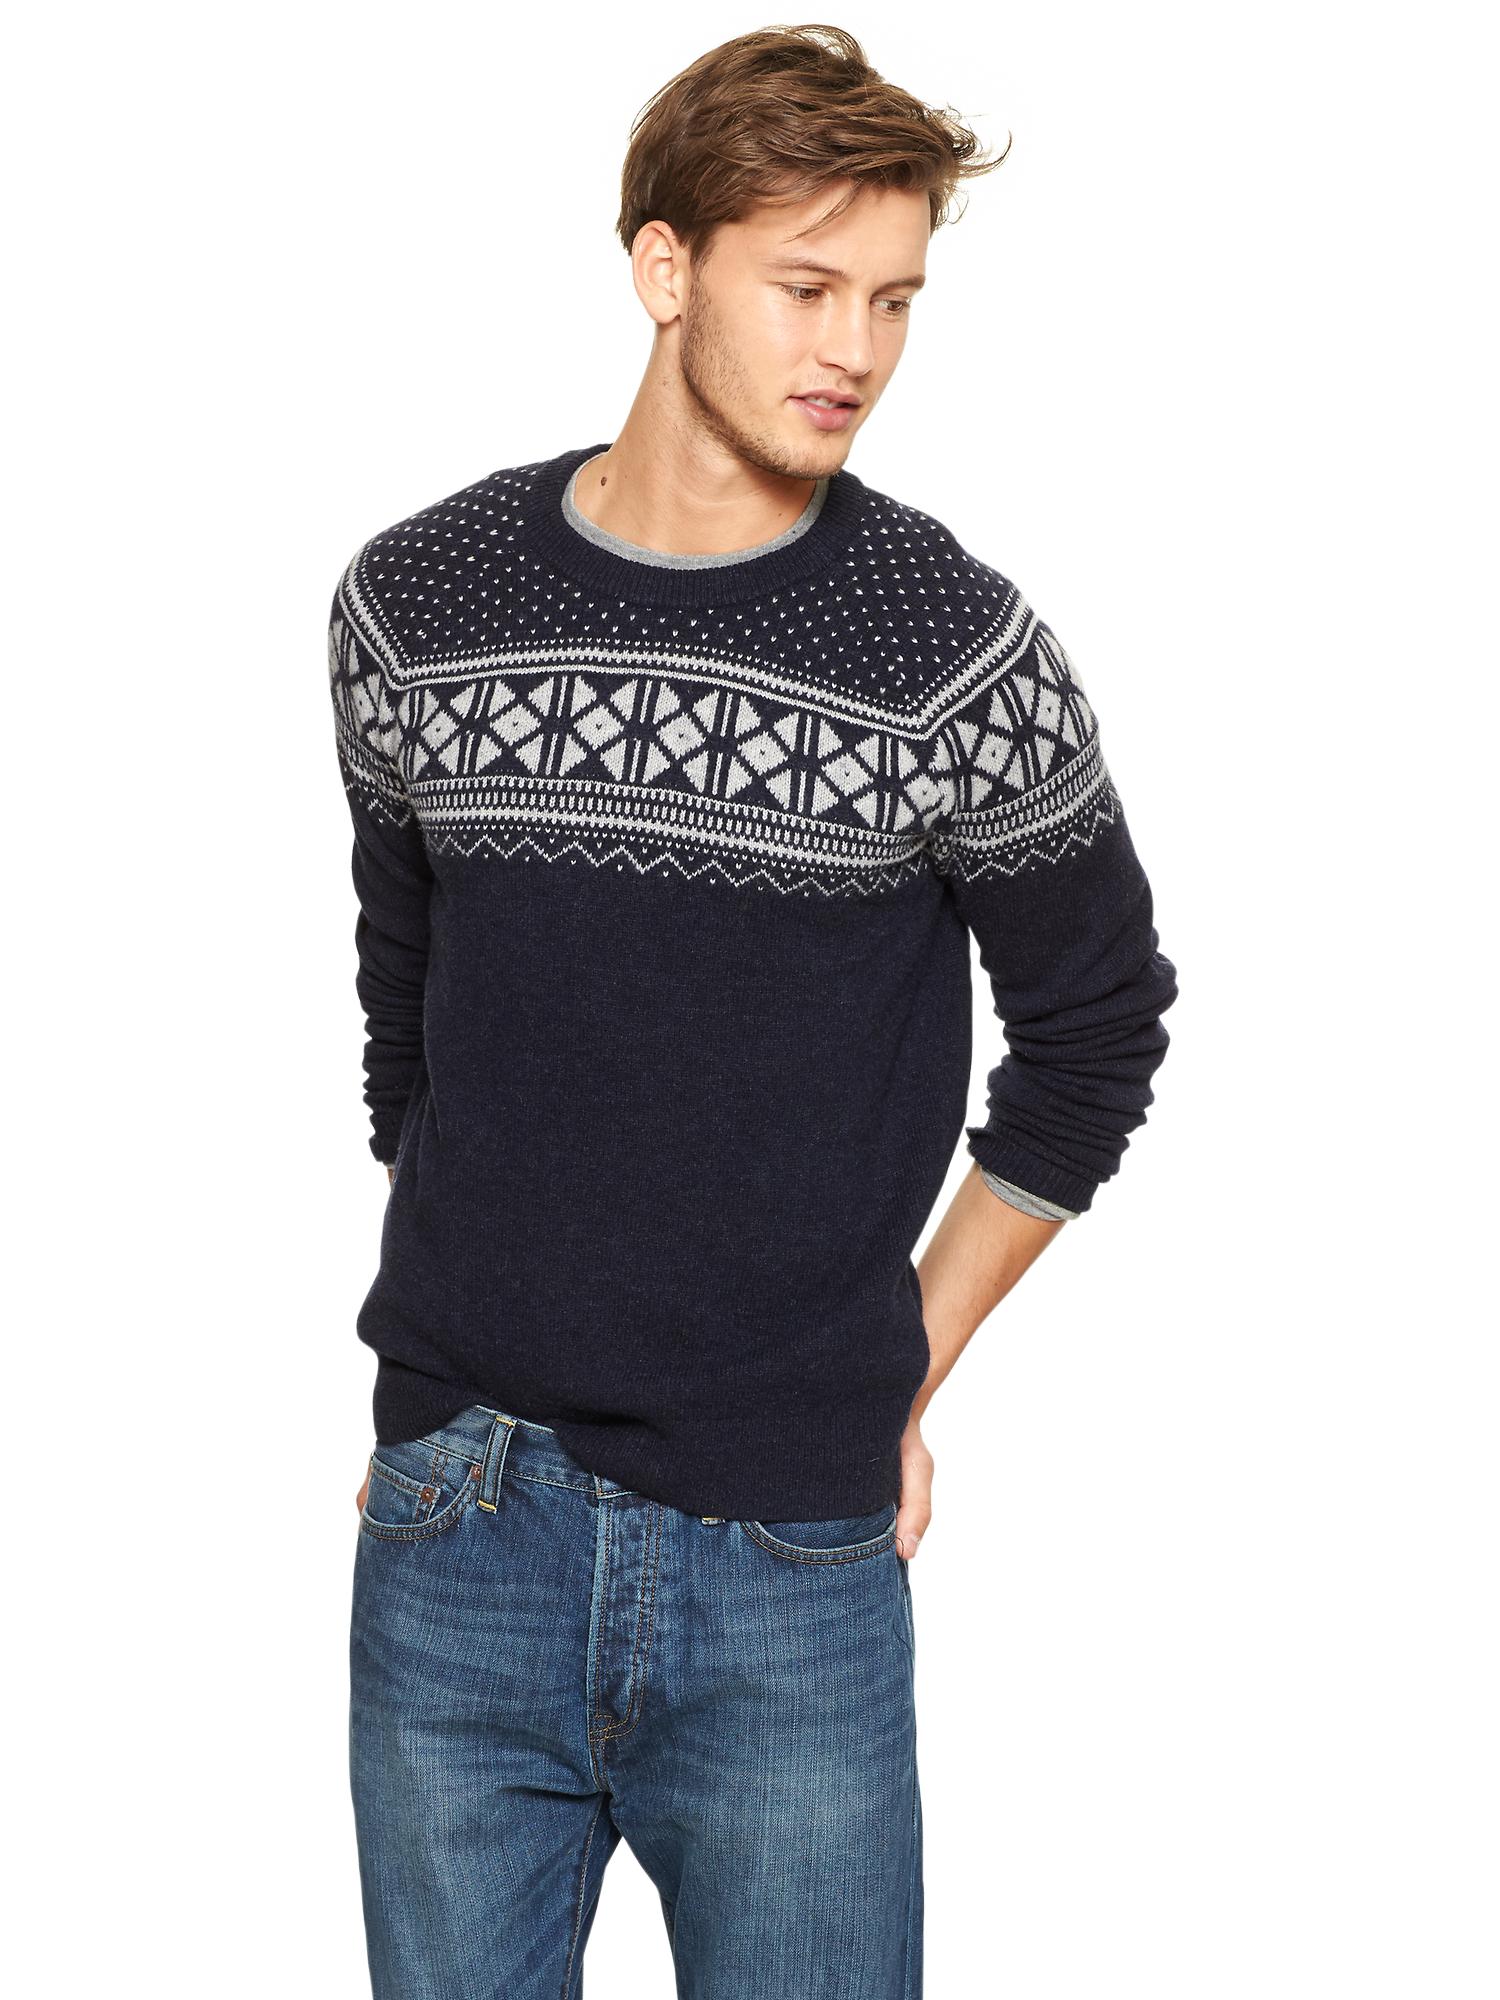 Fair Isle chest sweater | Gap